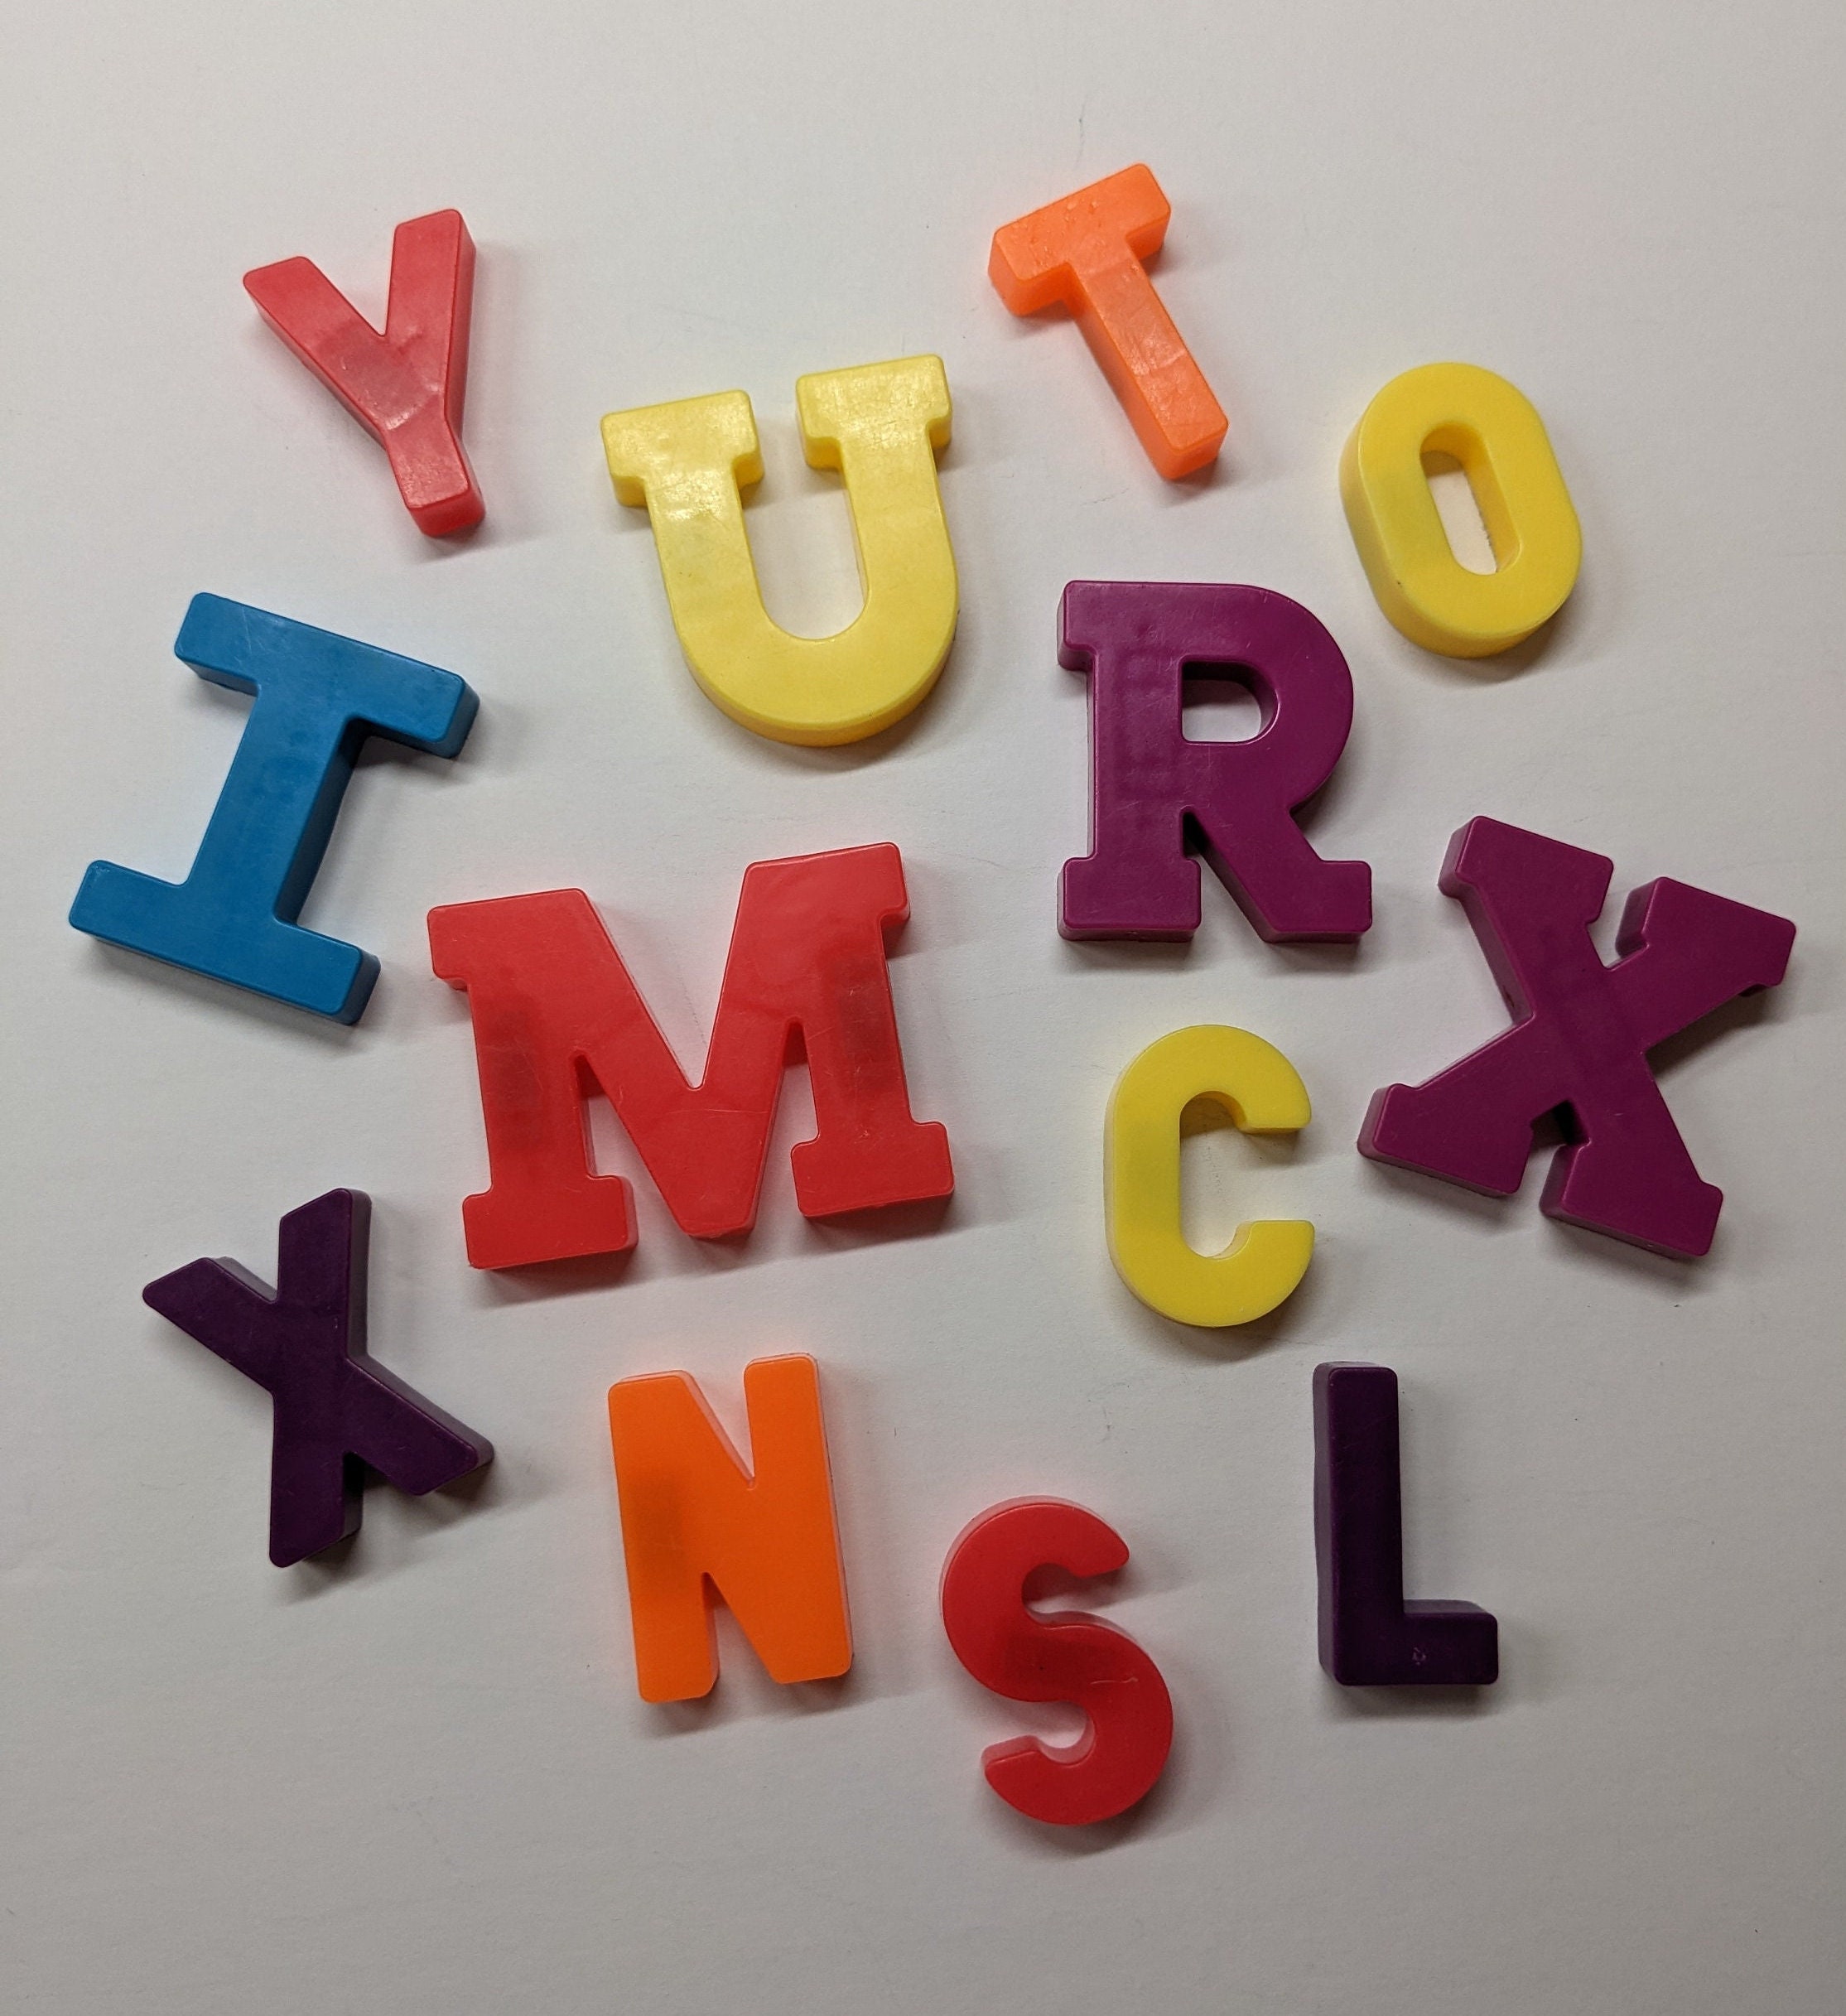 Coogam Tableau d'entraînement des lettres magnétiques, aimant traçage ABC,  tableau de l'alphabet pour apprendre à écrire majuscules et minuscules,  jouet éducatif à moteur fin, cadeau Montessori pour enfants de 3, 4, 5